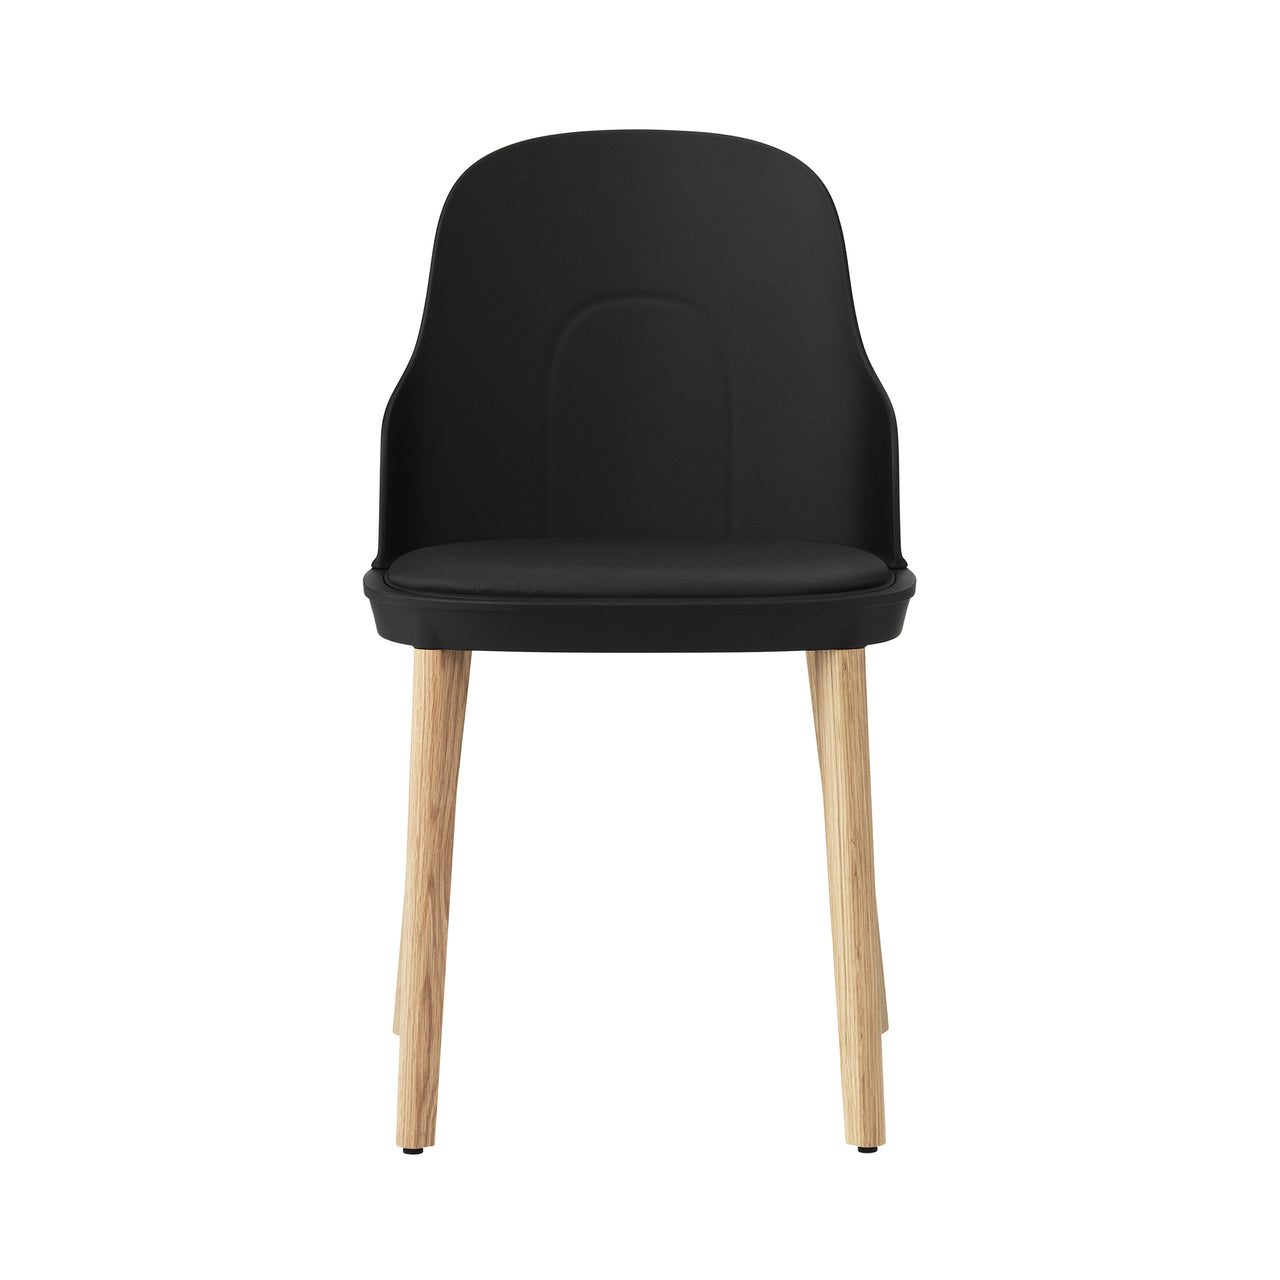 Allez Chair: Upholstered + Black + Oak